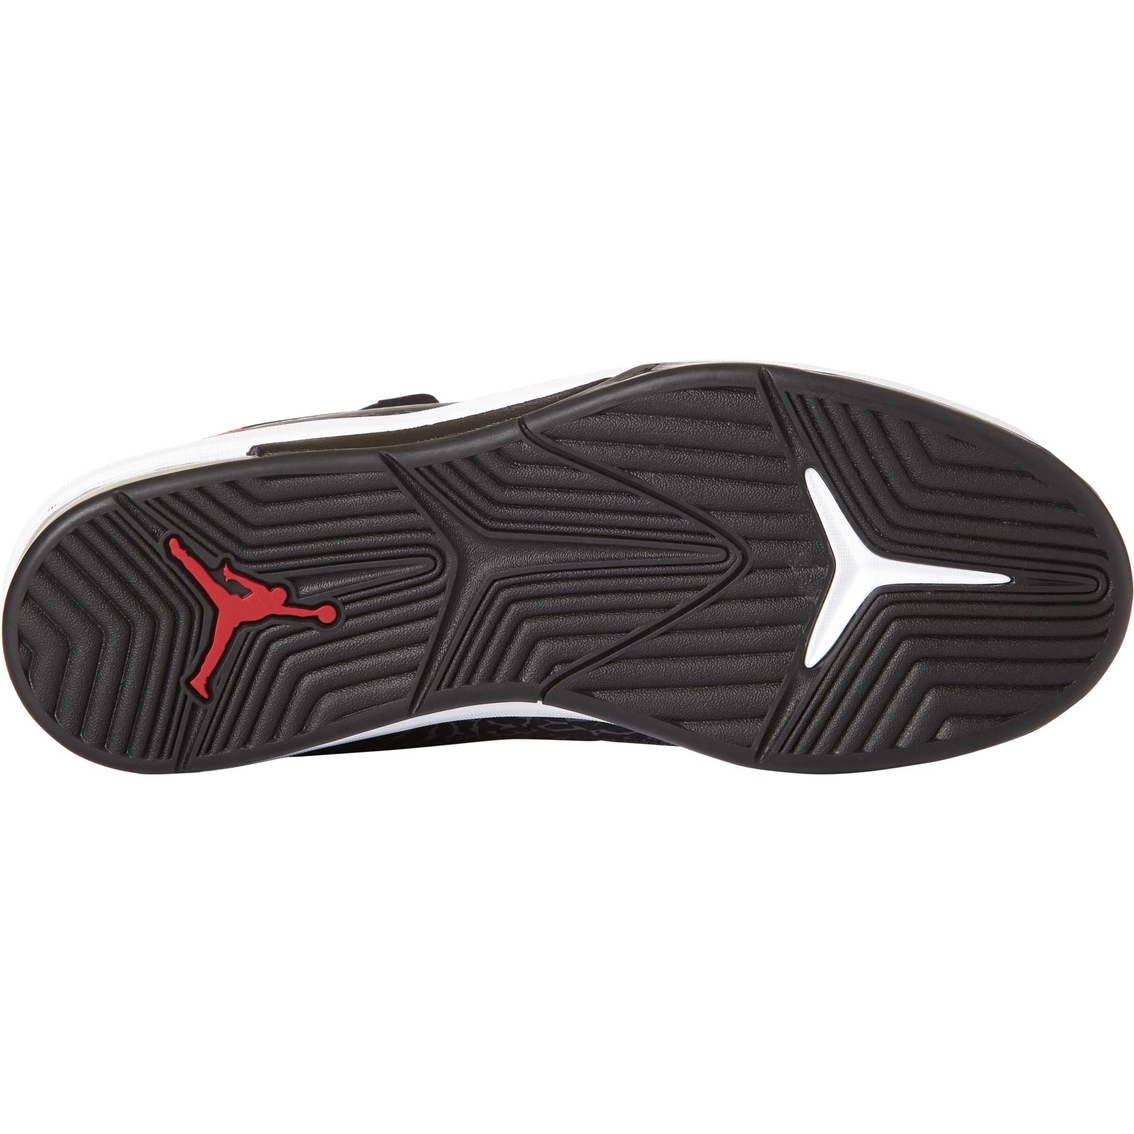 Jordan Air Deluxe Men's Basketball Shoes - Image 4 of 5